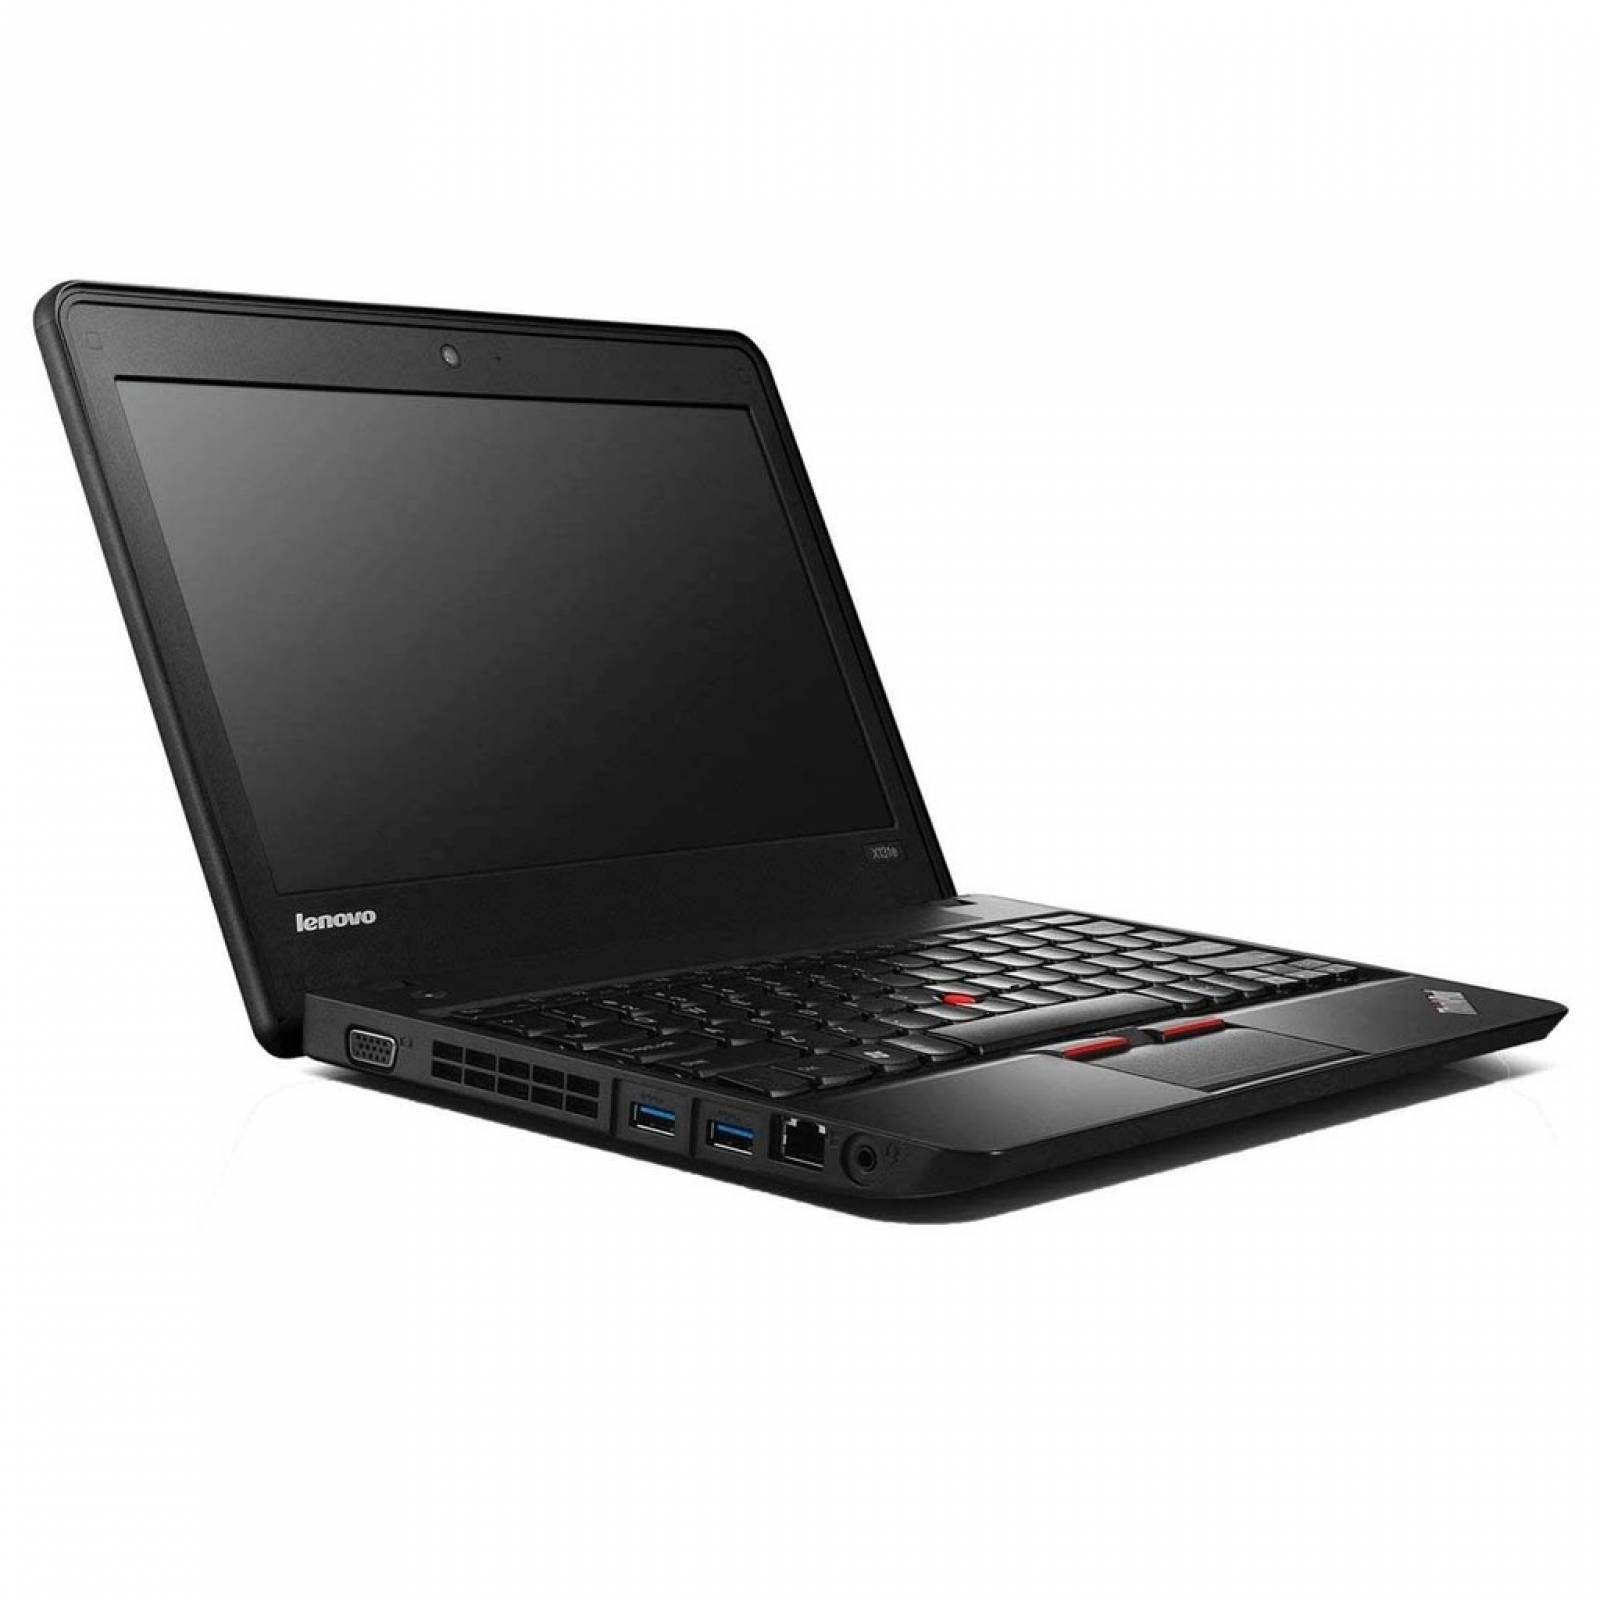 Laptop Lenovo Chromebook X131e 4GB Negra Reacondicionado